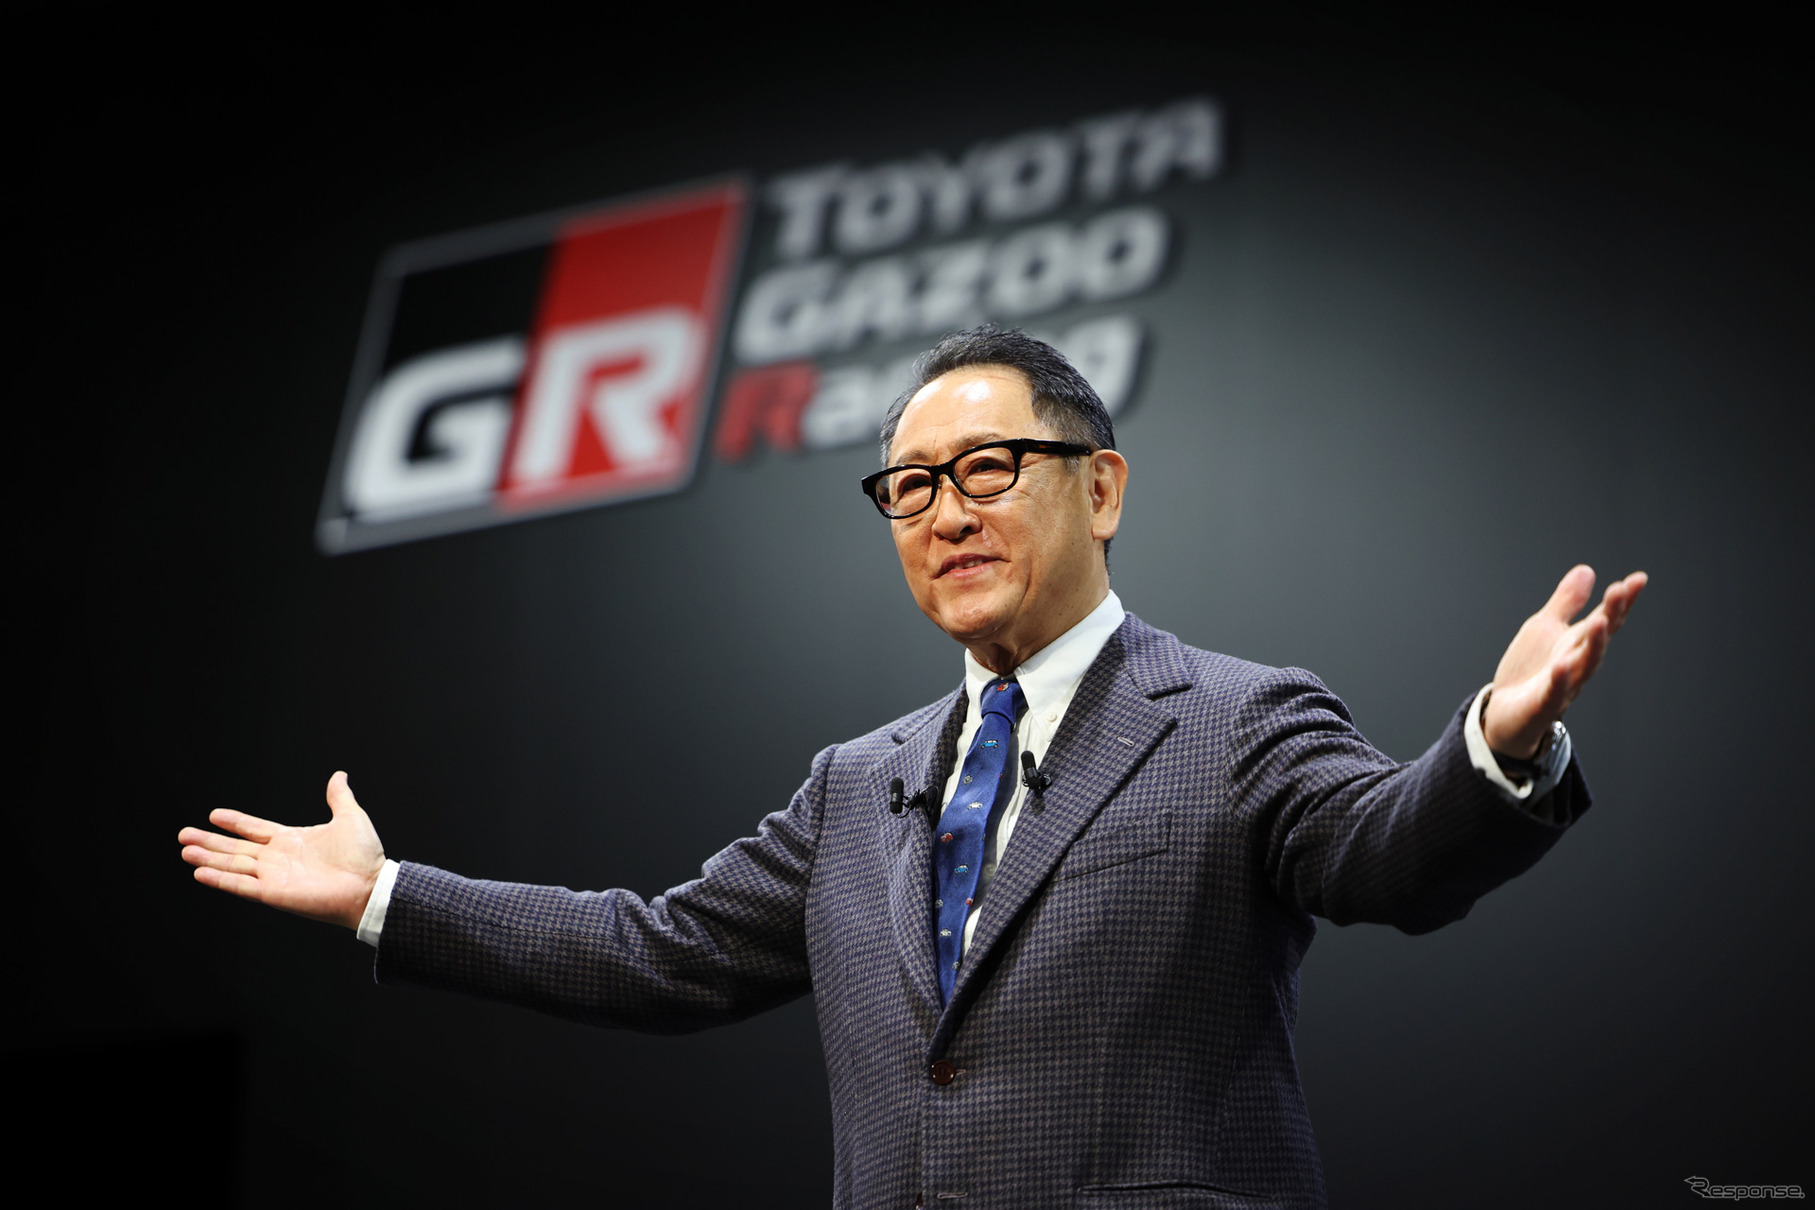 11代目社長・豊田章男氏はスポーツカー好き、カーレース好きで新時代のトヨタのイメージ作りに寄与した。